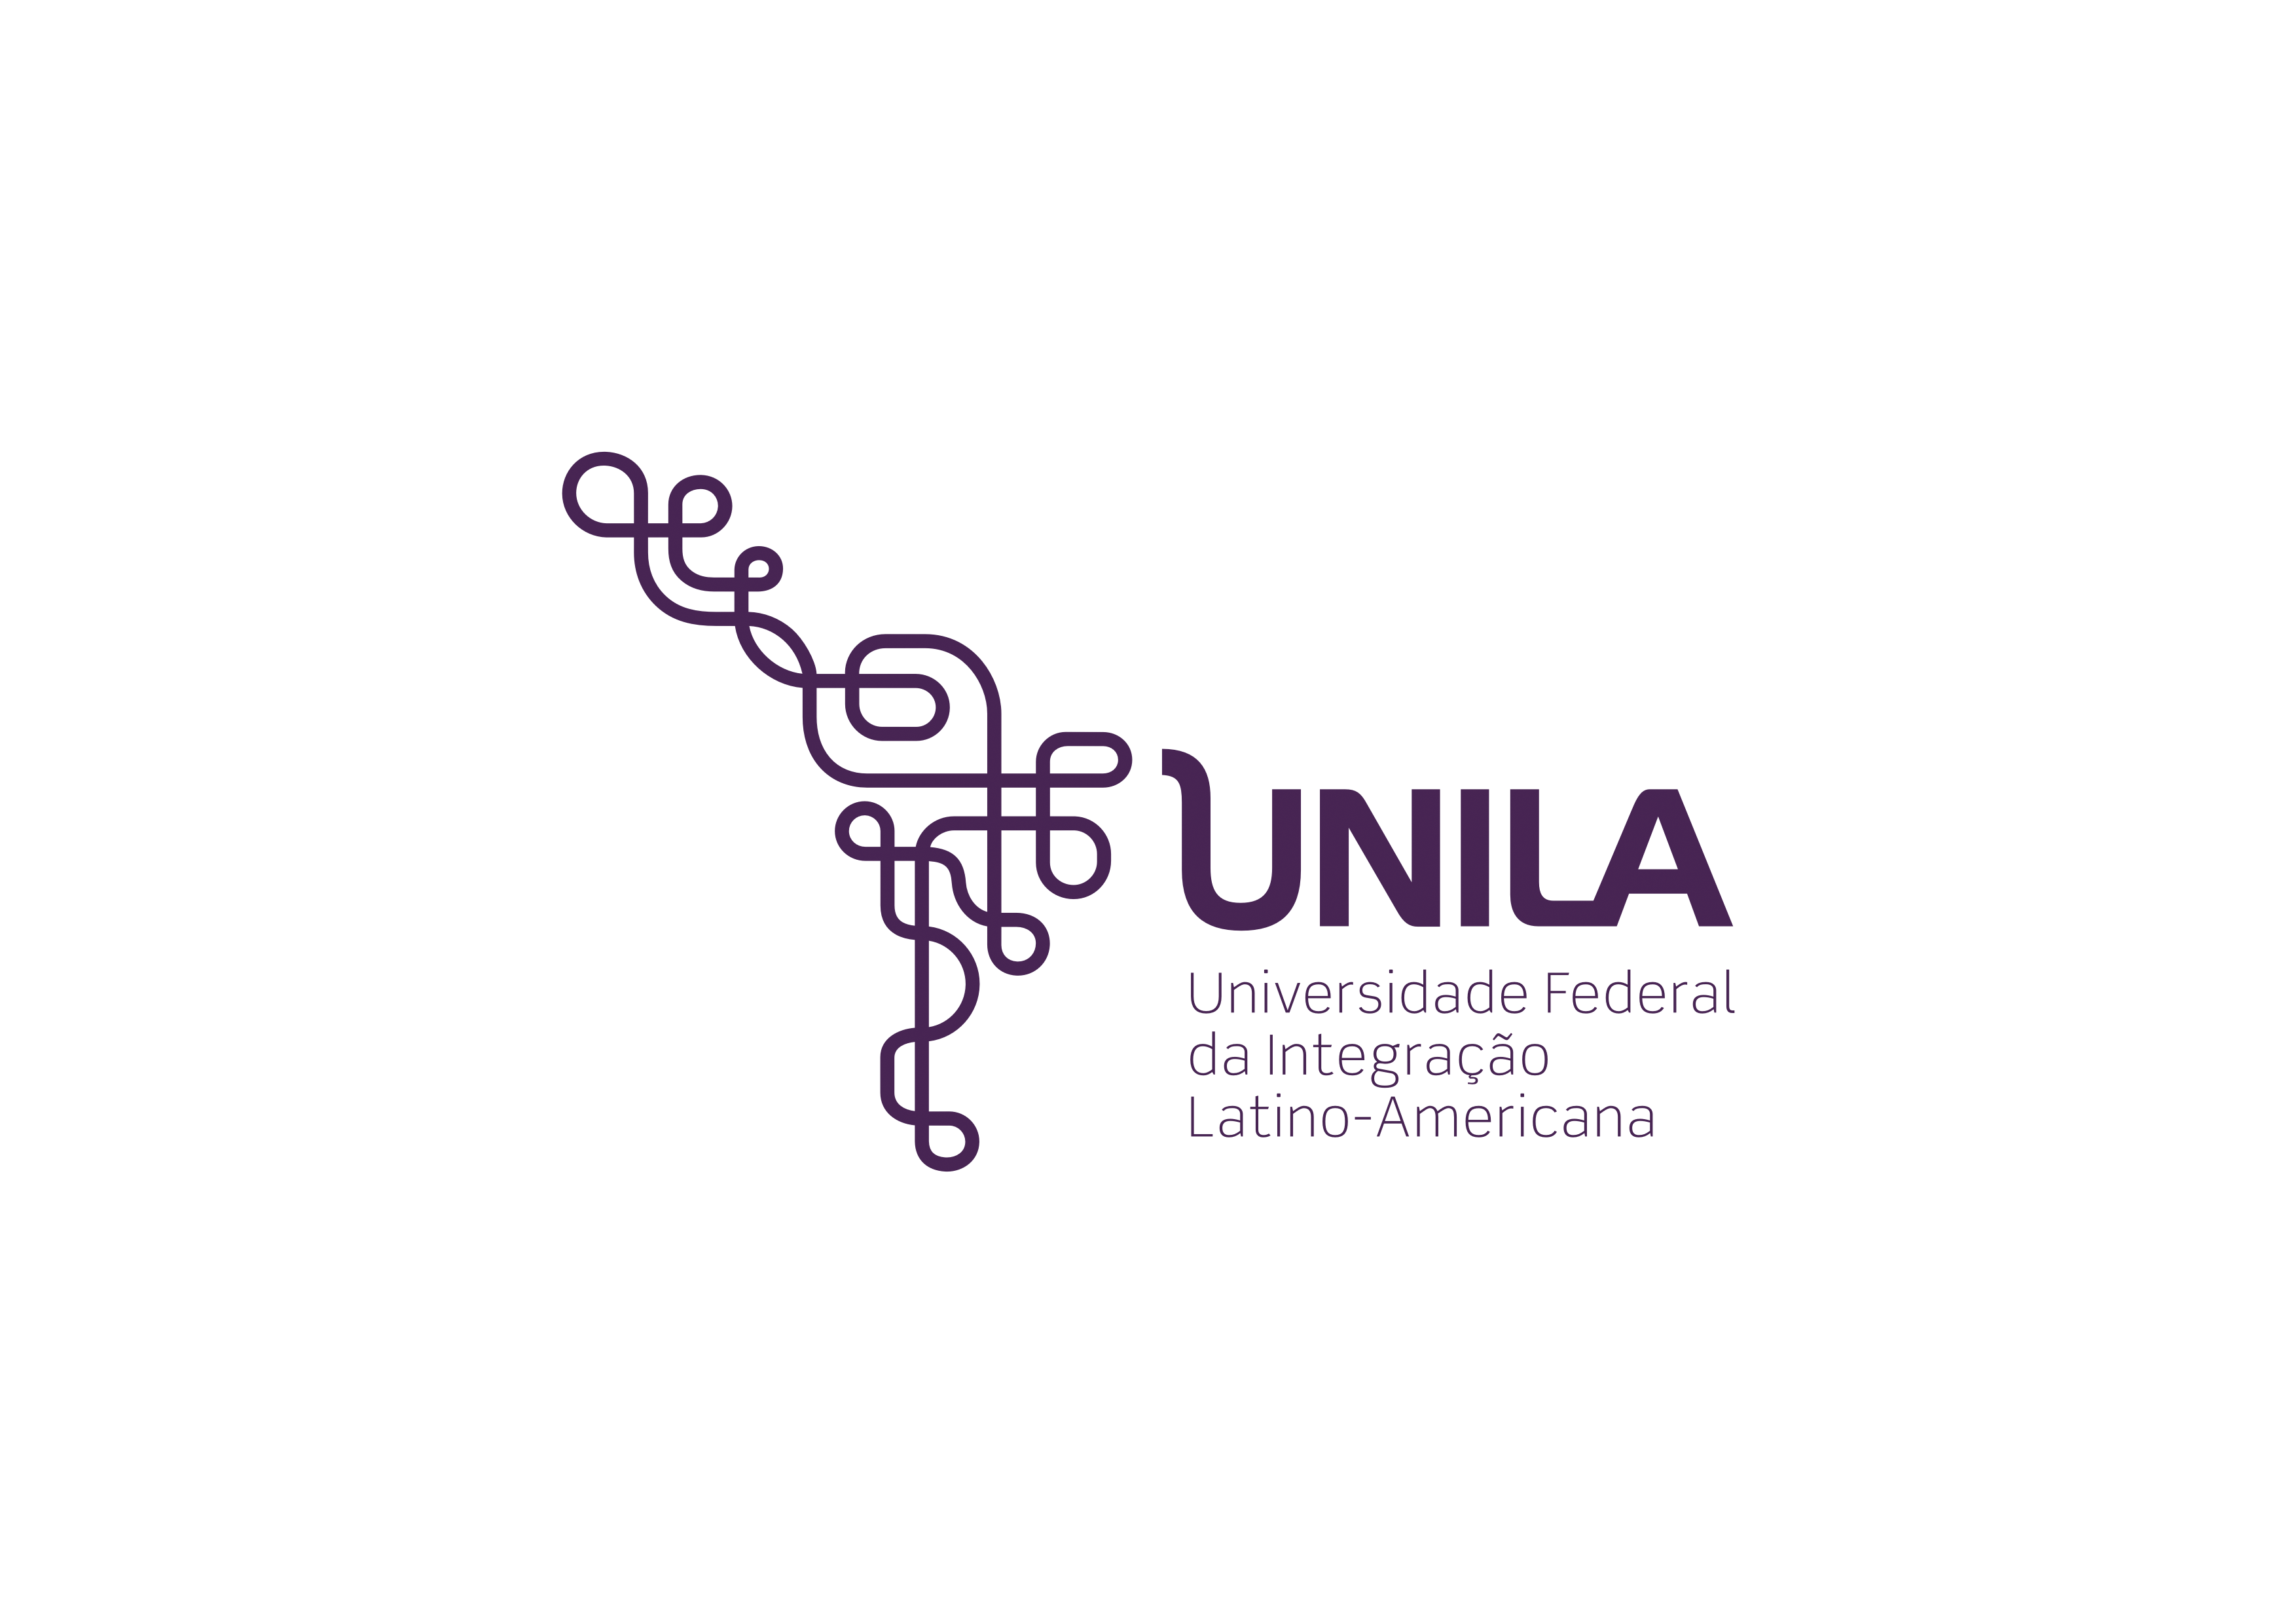 UNILA (Universidade Federal da Integração Latino-Americana)